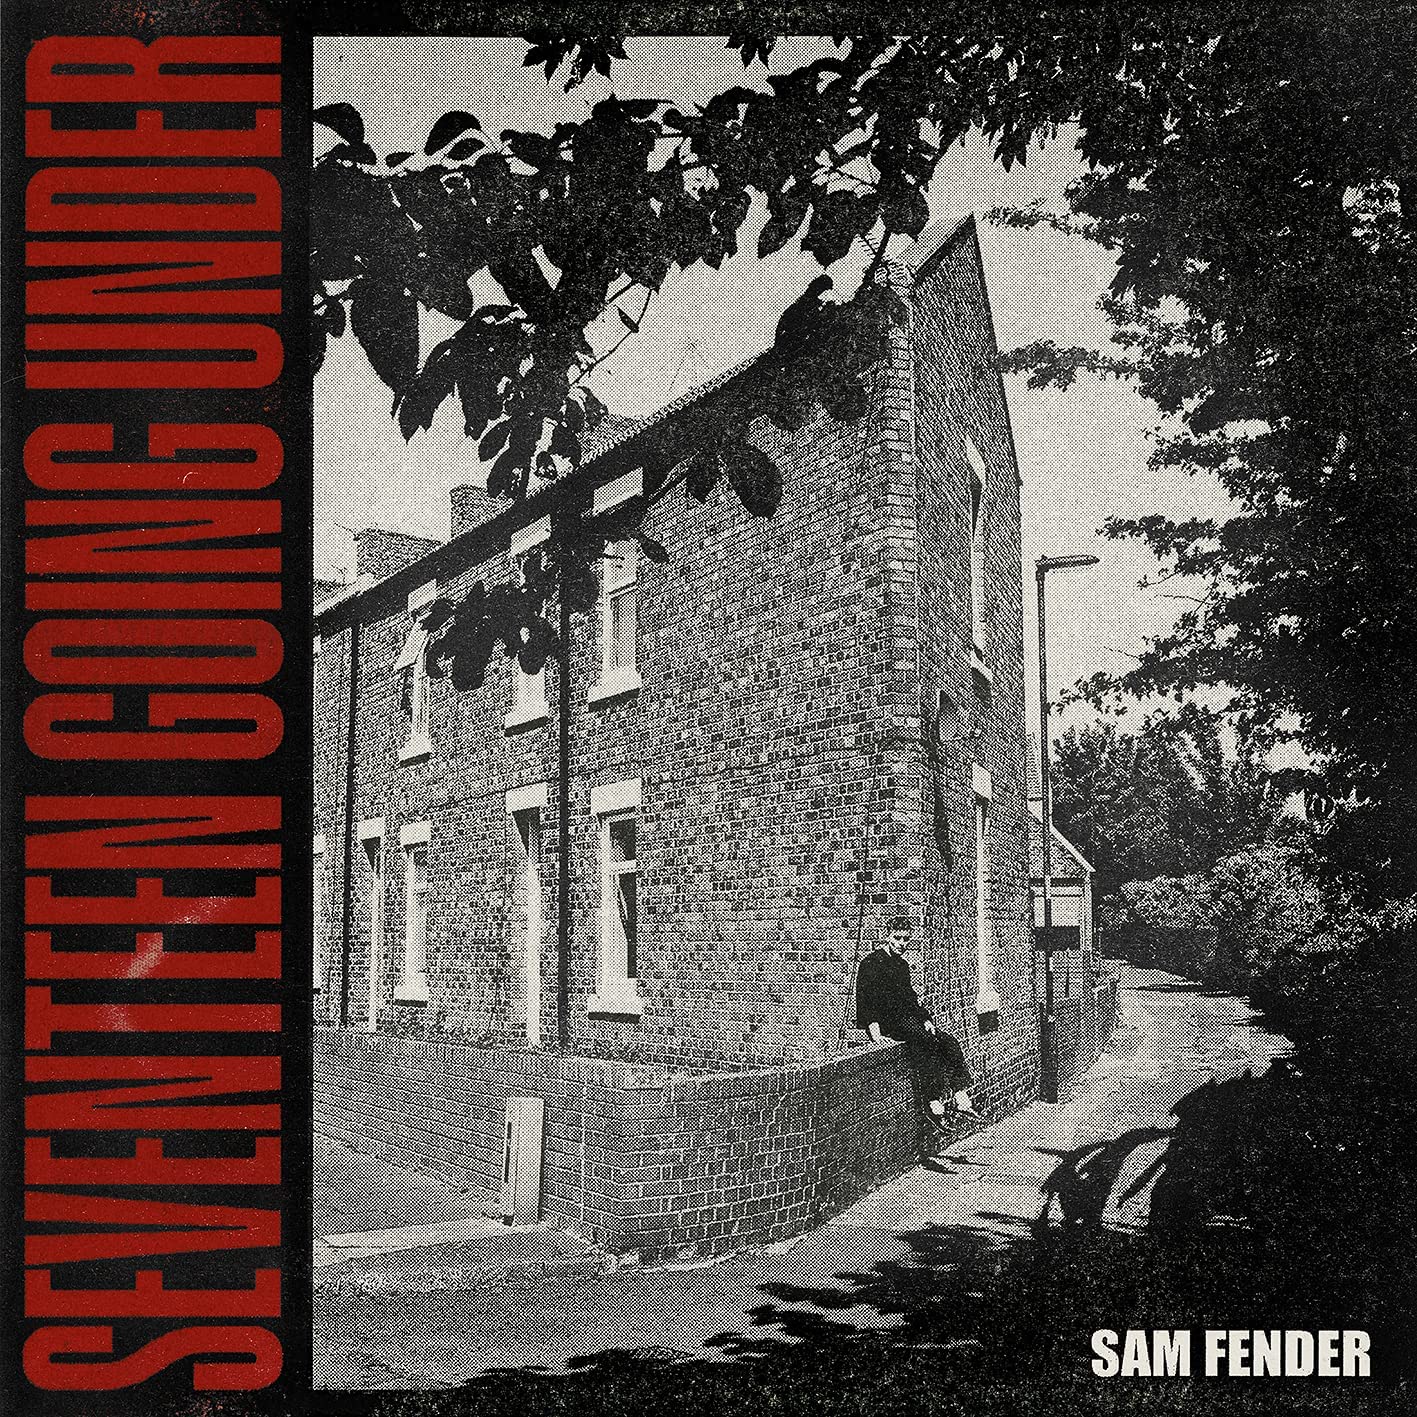 Sam Fender Seventeen Going Under